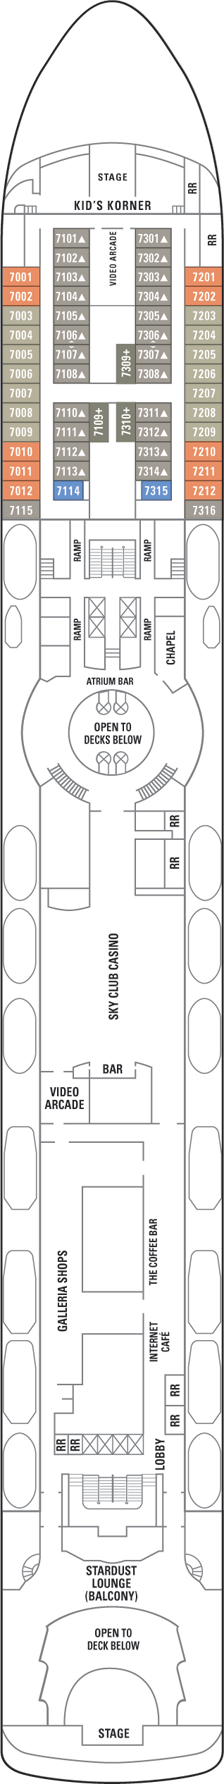 Deck 7 Deck Plan